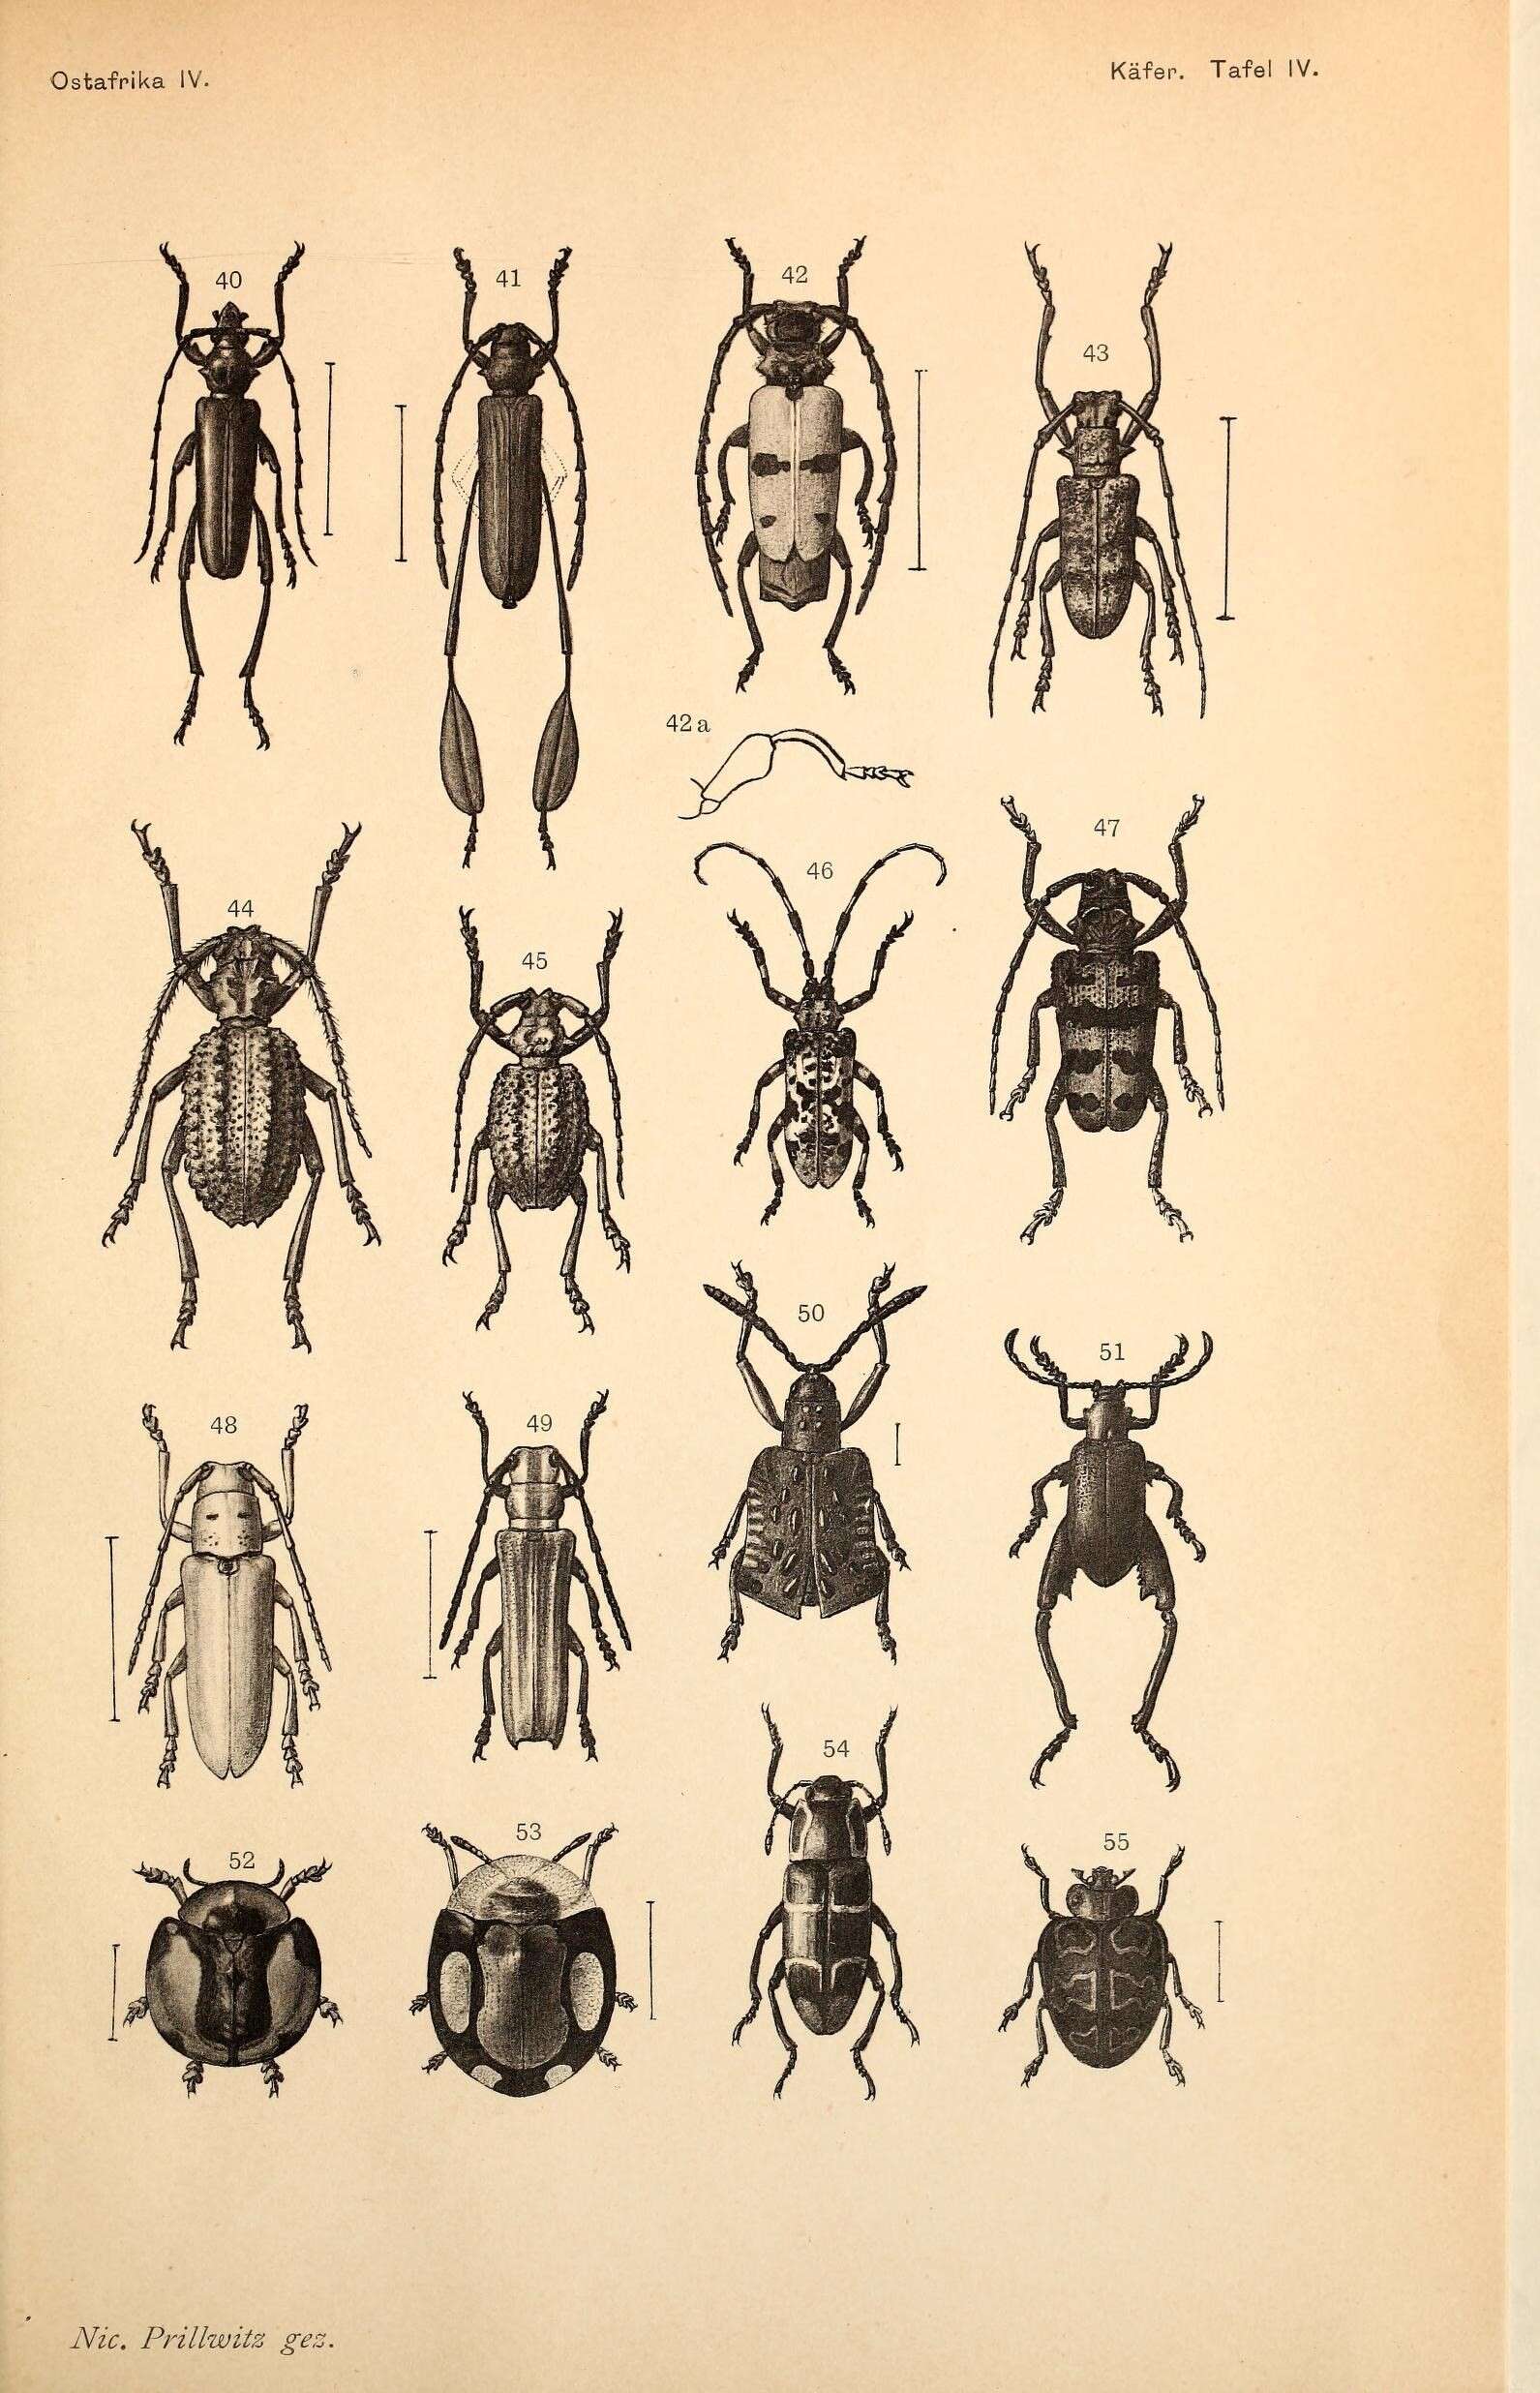 Image of Philematium calcaratum debilis (Kolbe 1894)